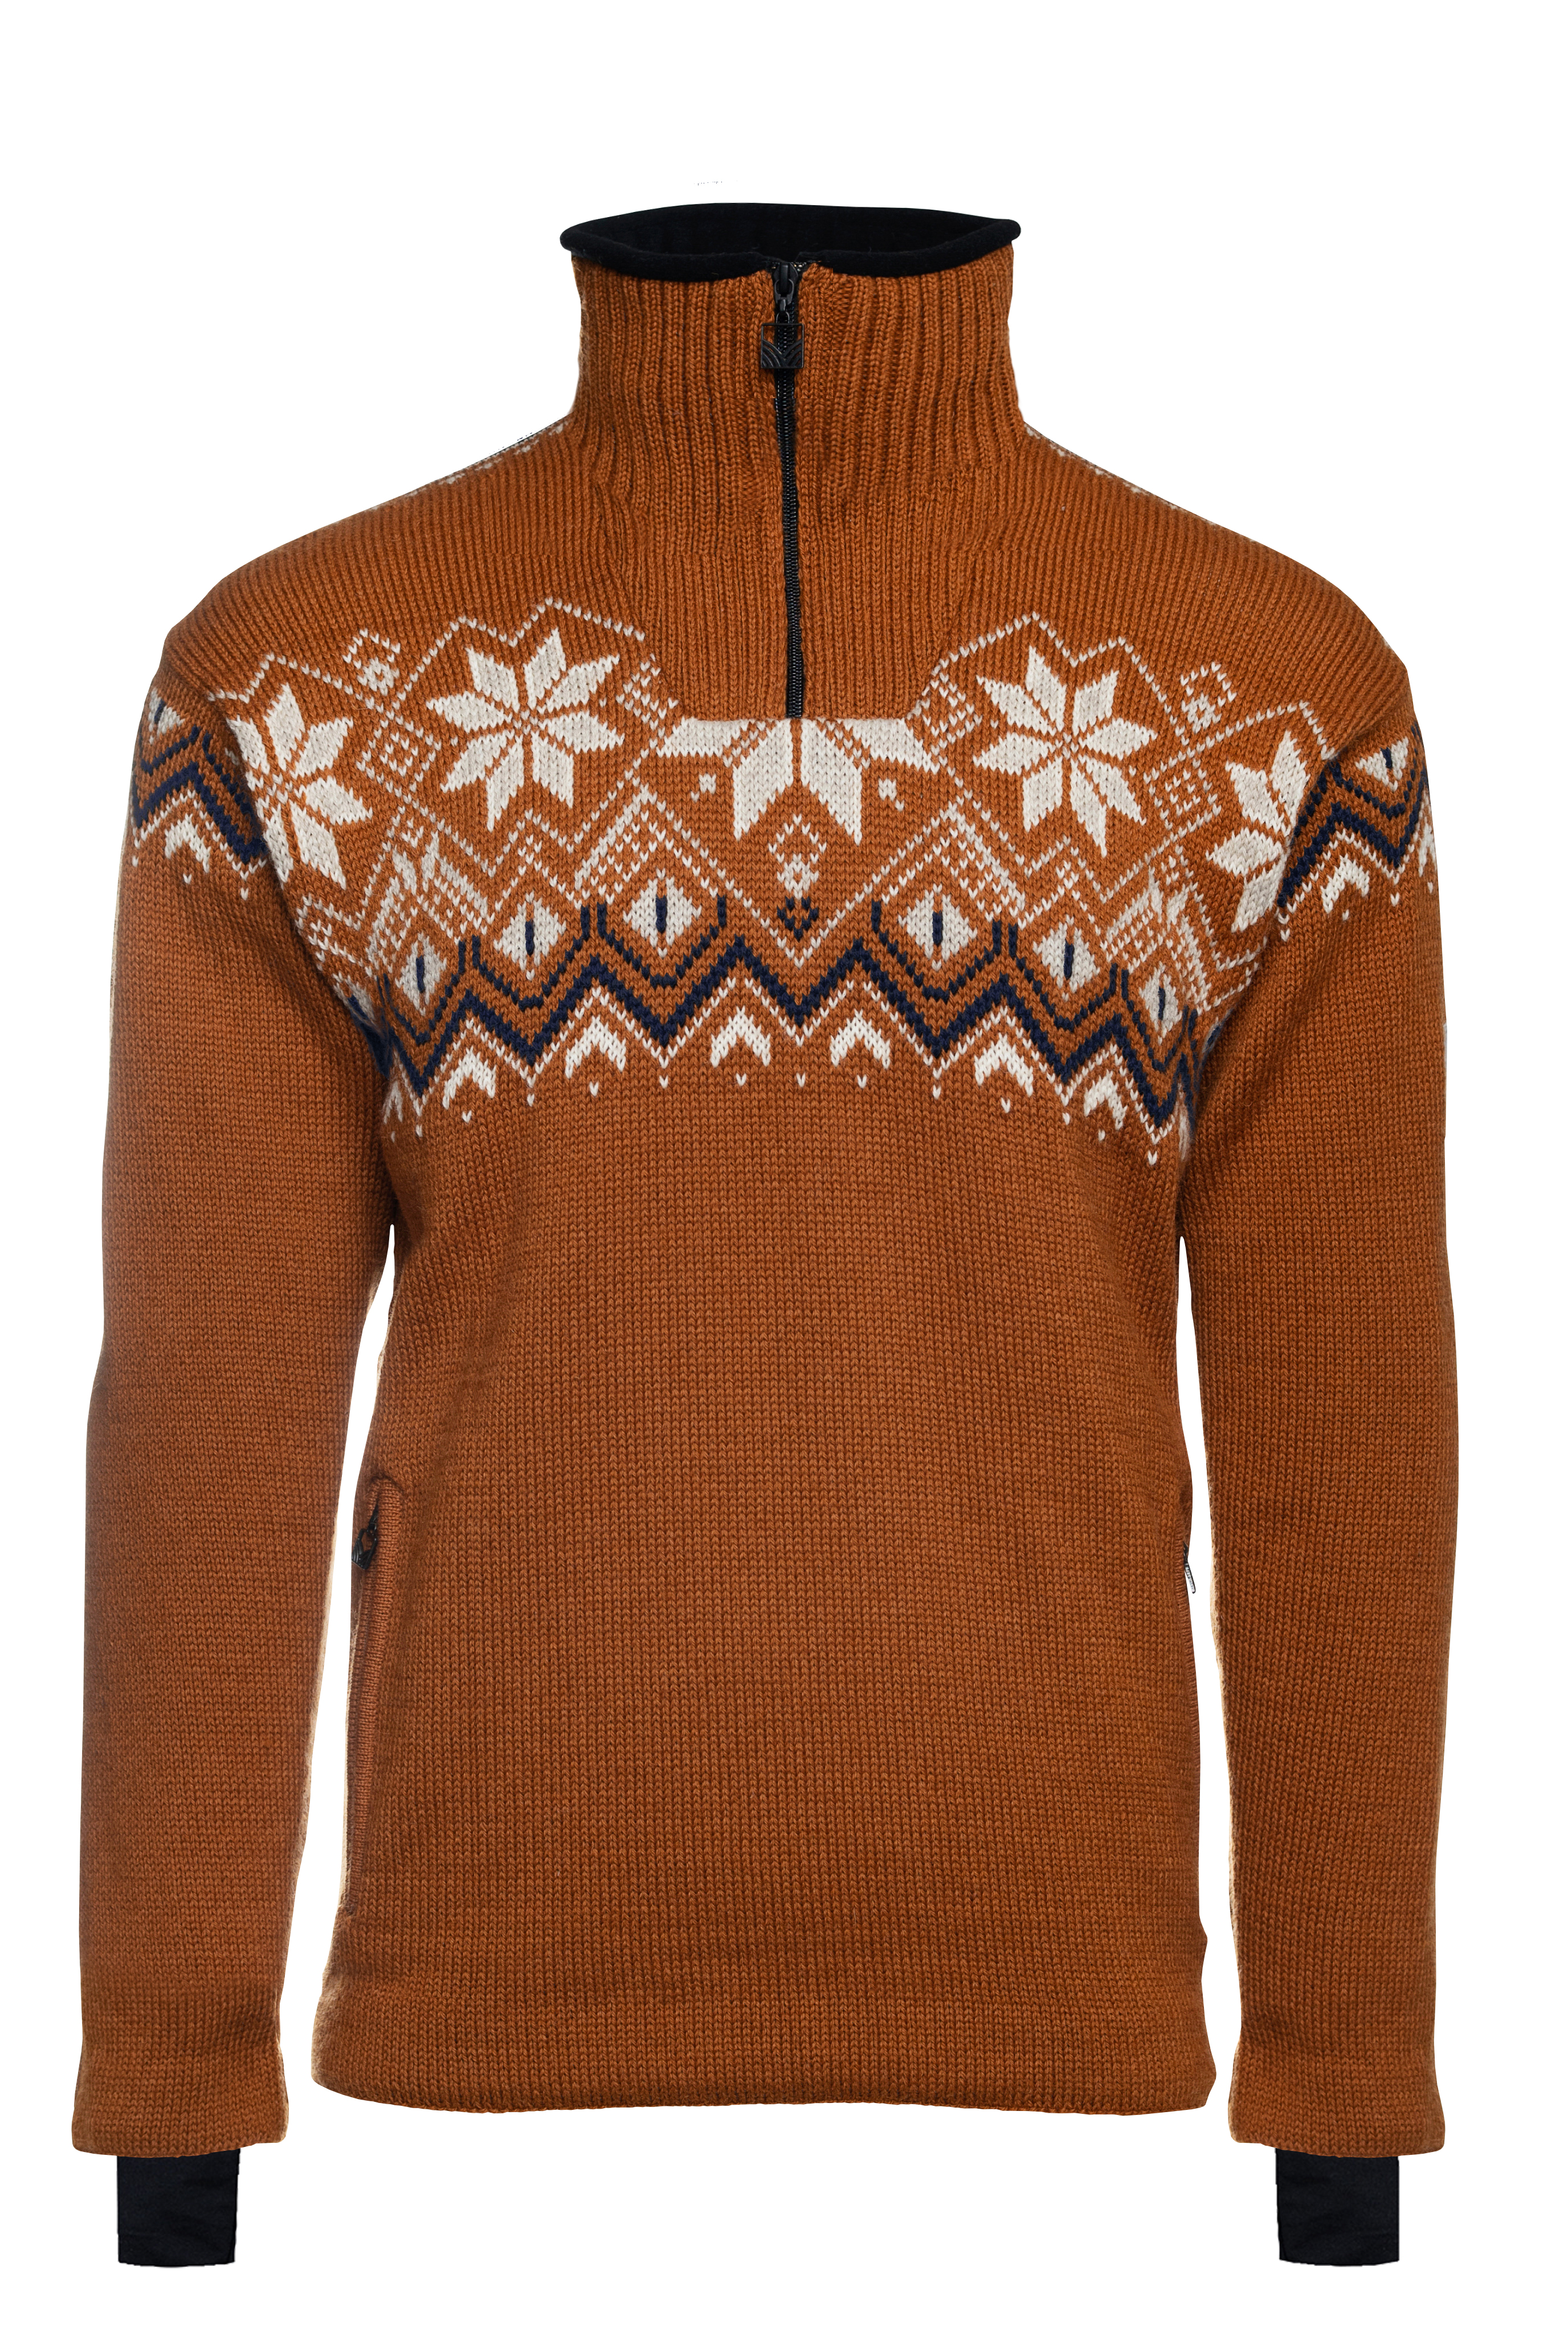 Fongen WP Masc Sweater Copper - Dale of Norway